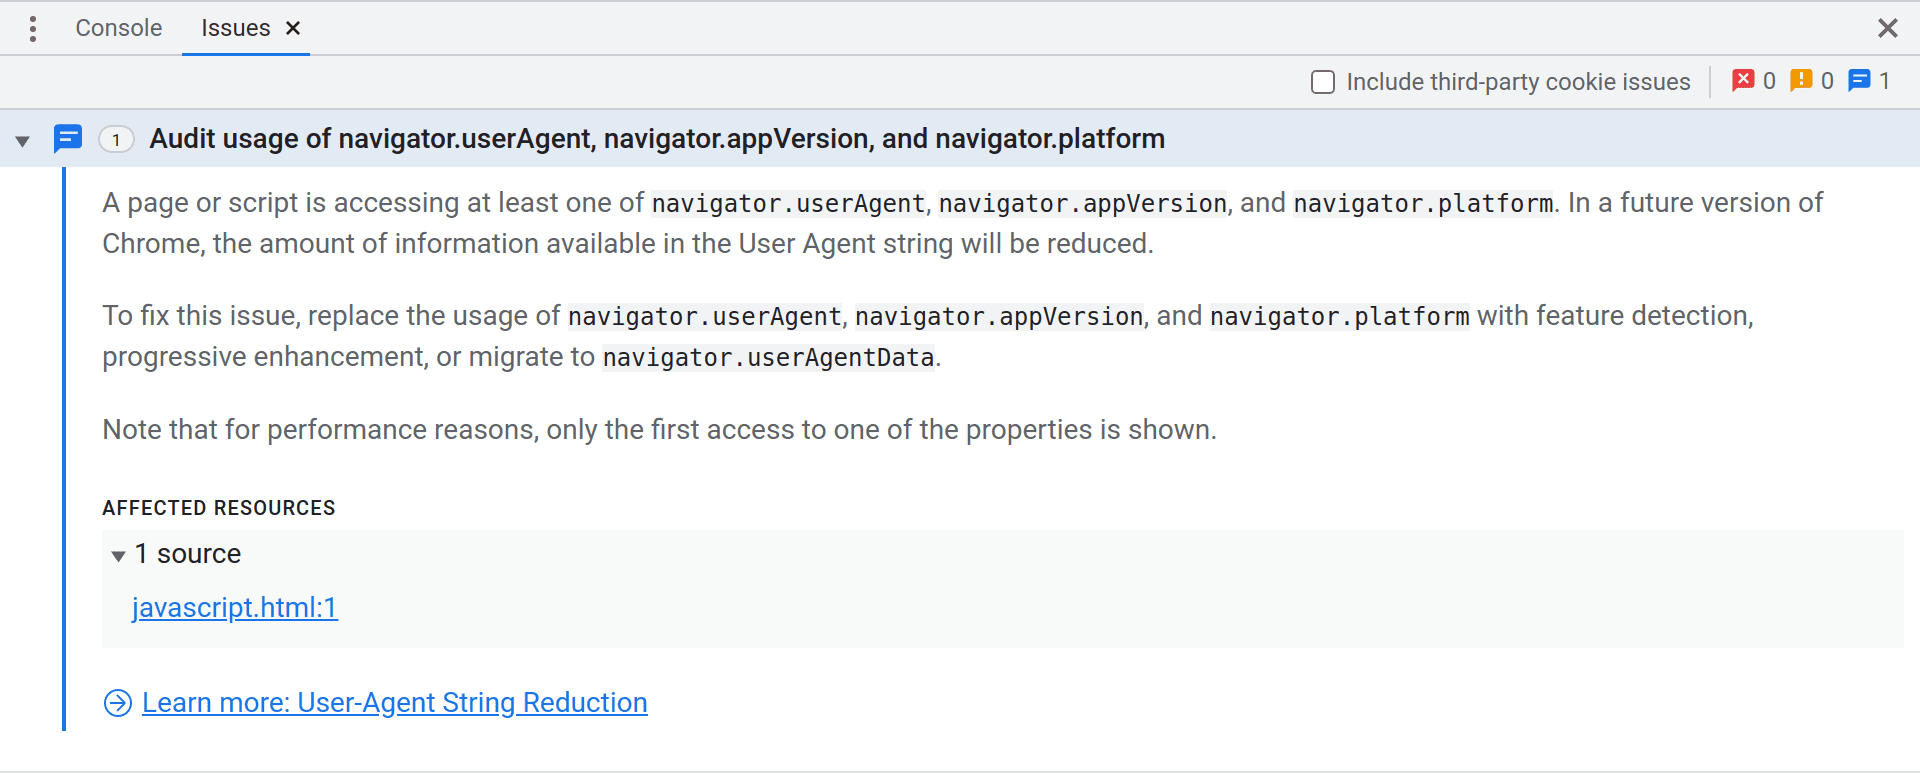 Panel Issues DevTools yang menampilkan masalah Peningkatan yang menyarankan developer
untuk mengaudit penggunaan navigator.userAgent, navigator.appVersion, dan
navigator.platform